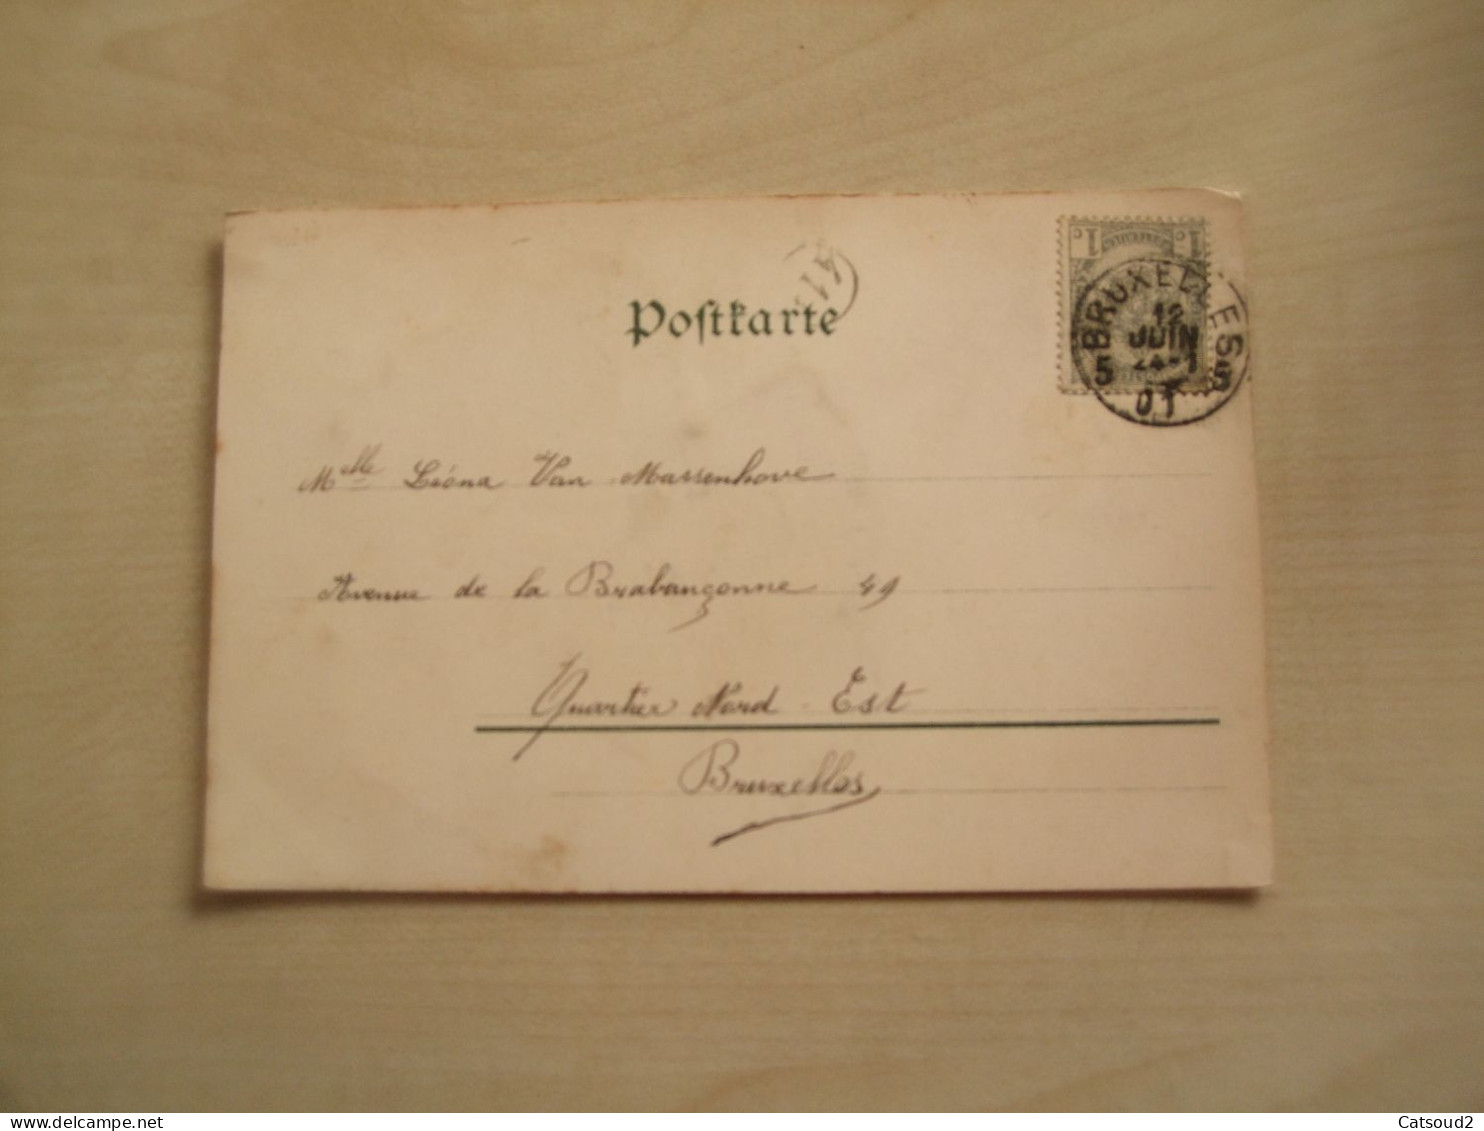 Carte Postale Ancienne 1901 Style Belle époque VISAGE DANS COQUELICOT - Fiori